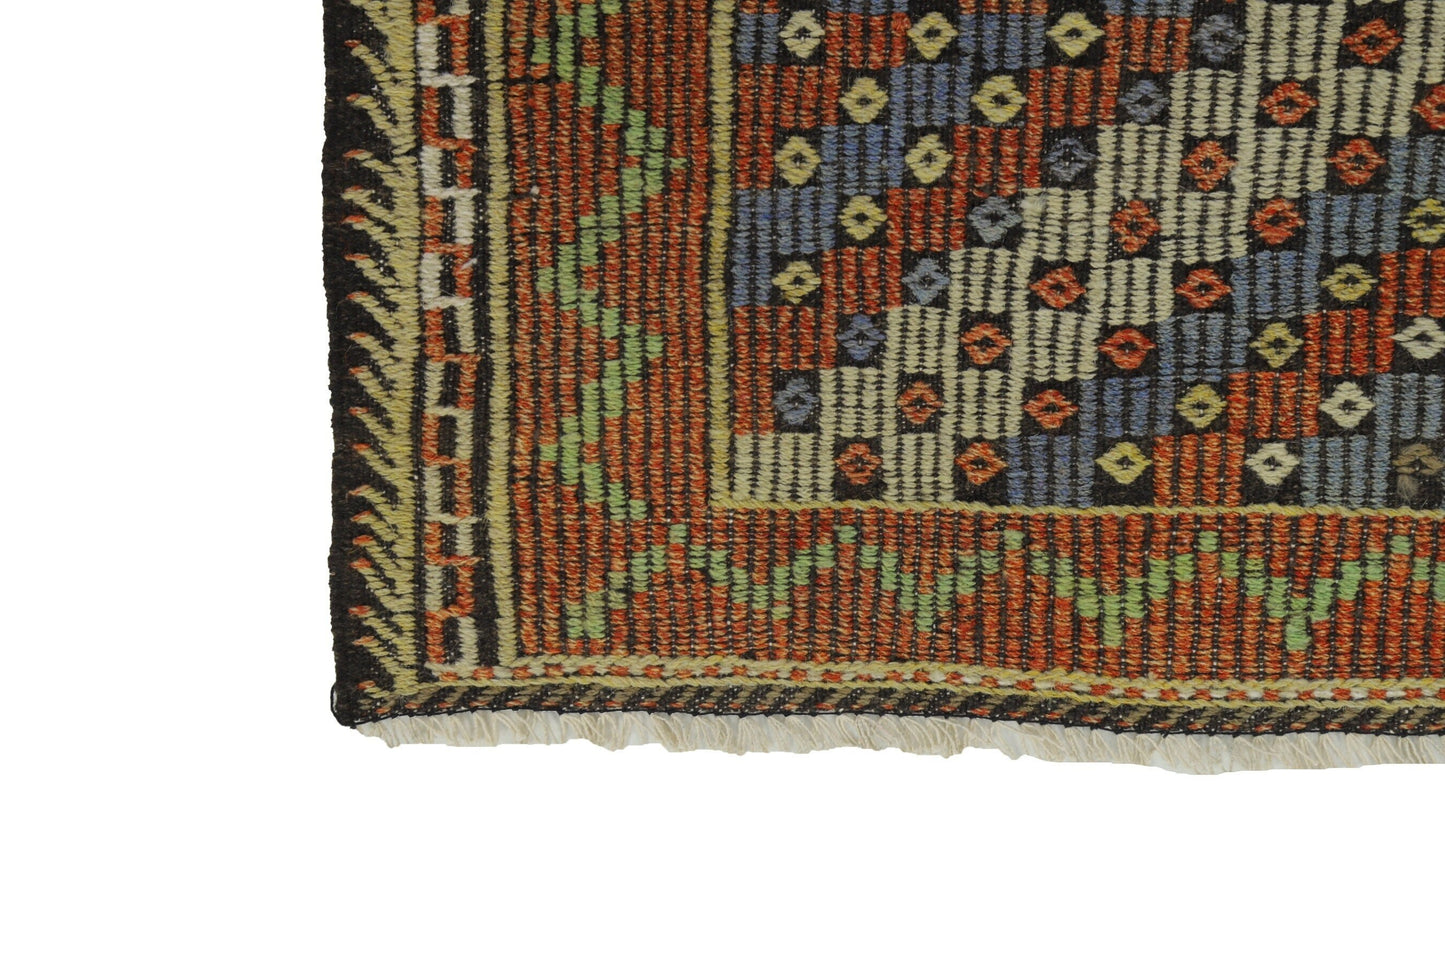 Turkish Kilim, Vintage Kilim Rug 4x7, Handmade Antique Eclectic Kilim Rug, Kilim Rug, Rug Kilim, Bohemian Rug, Wool Rug, Bedroom Rug, 8146